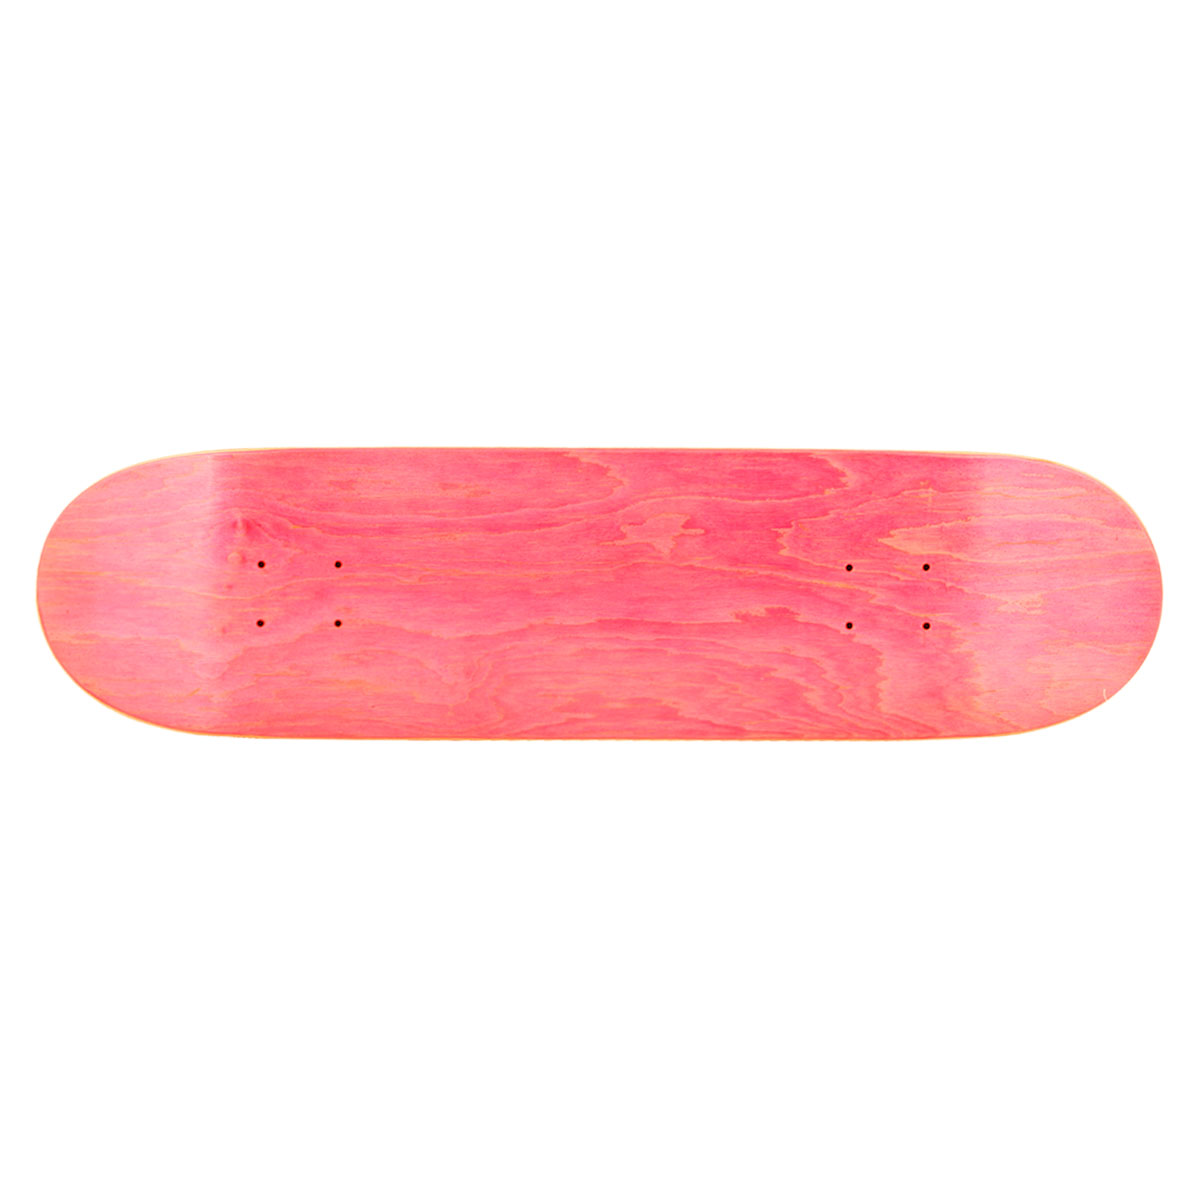 1Pcs Blank Skateboard Decks Warning Skateboard Longboards Deck  31